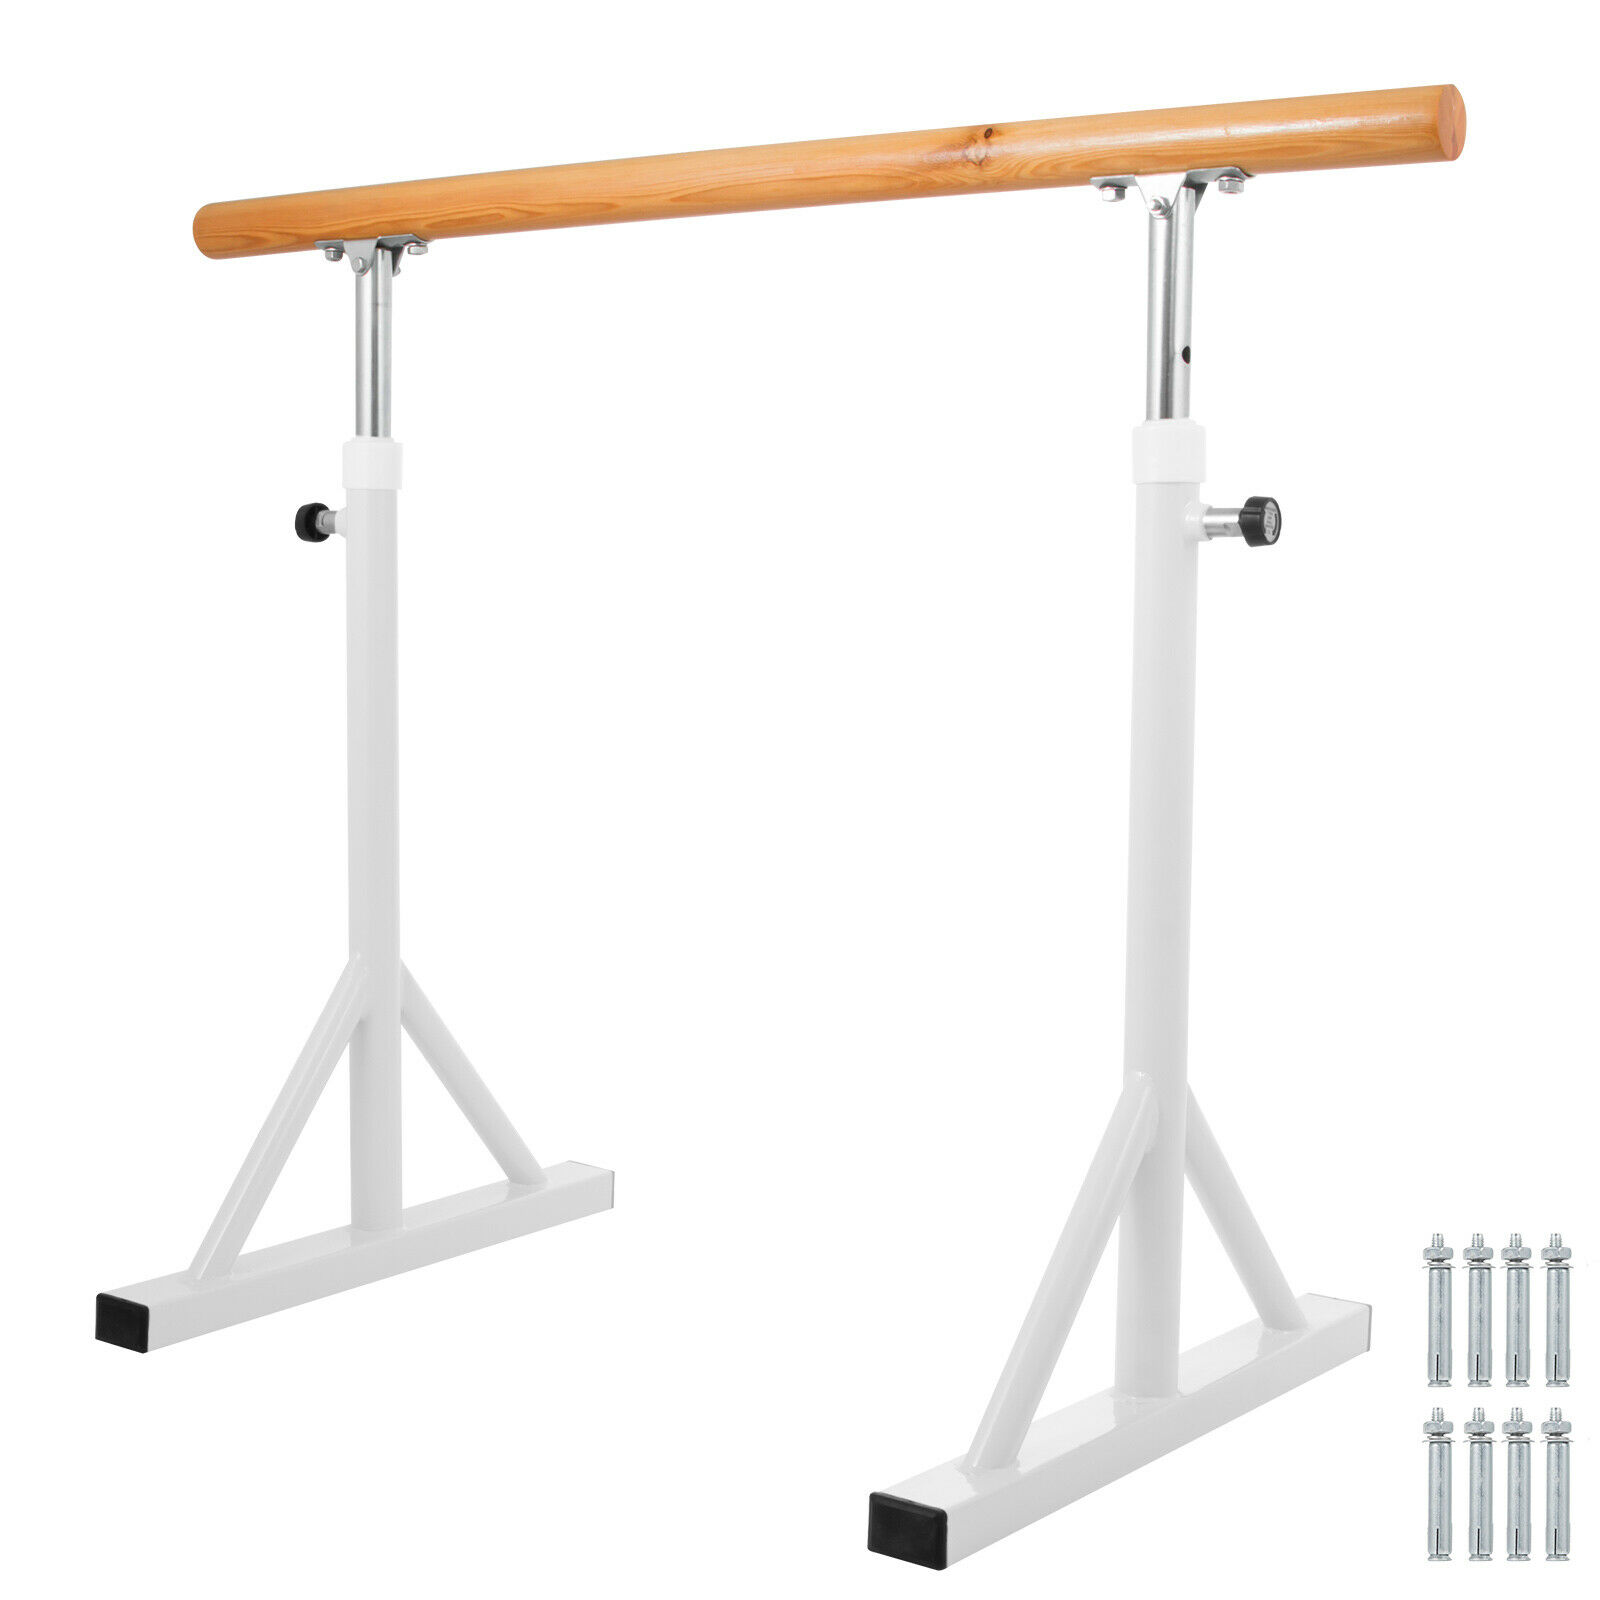 5ft Ballet Barre Singlebar Freestanding Dance Exercise Training Equipment Stand